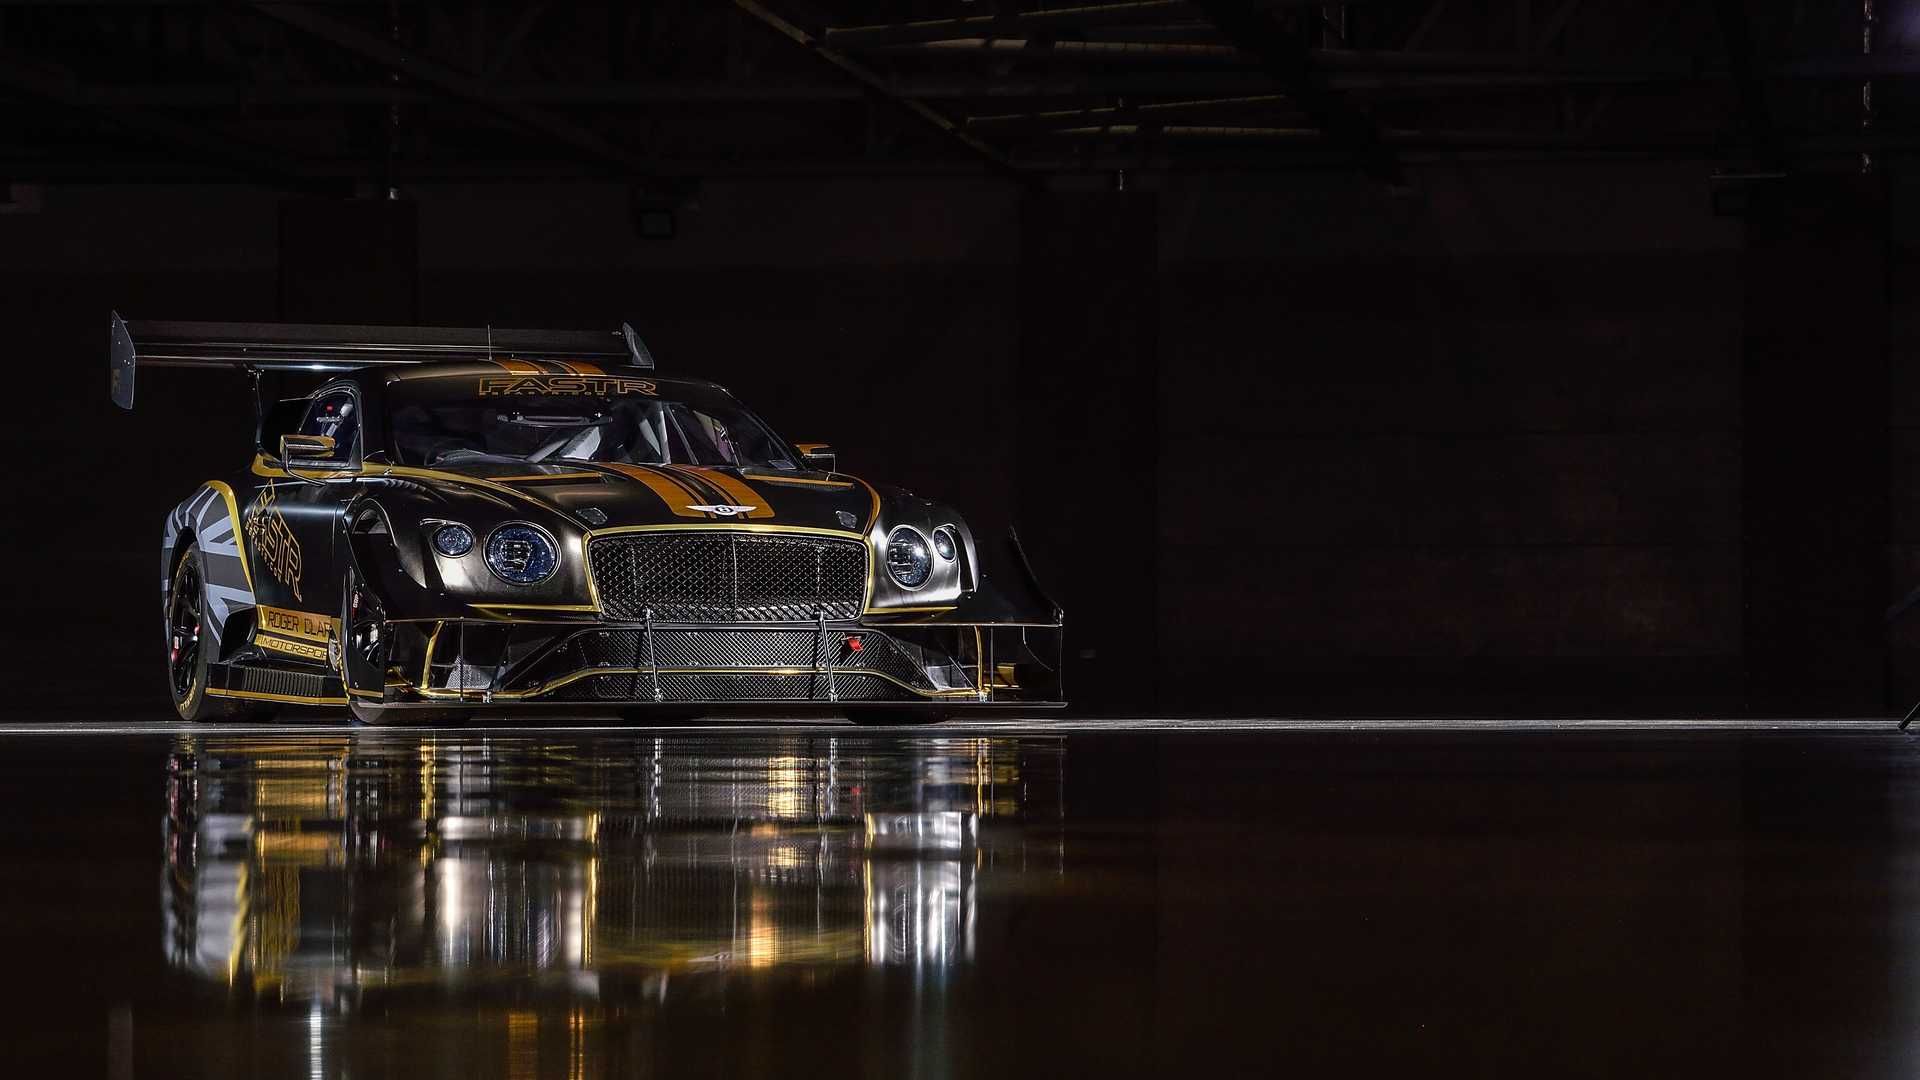 نمای جلو بنتلی کنتیننتال جی تی 3 پایکز پیک / Bentley Continental GT3 Pikes Peak سیاه رنگ با نوارهای زرد